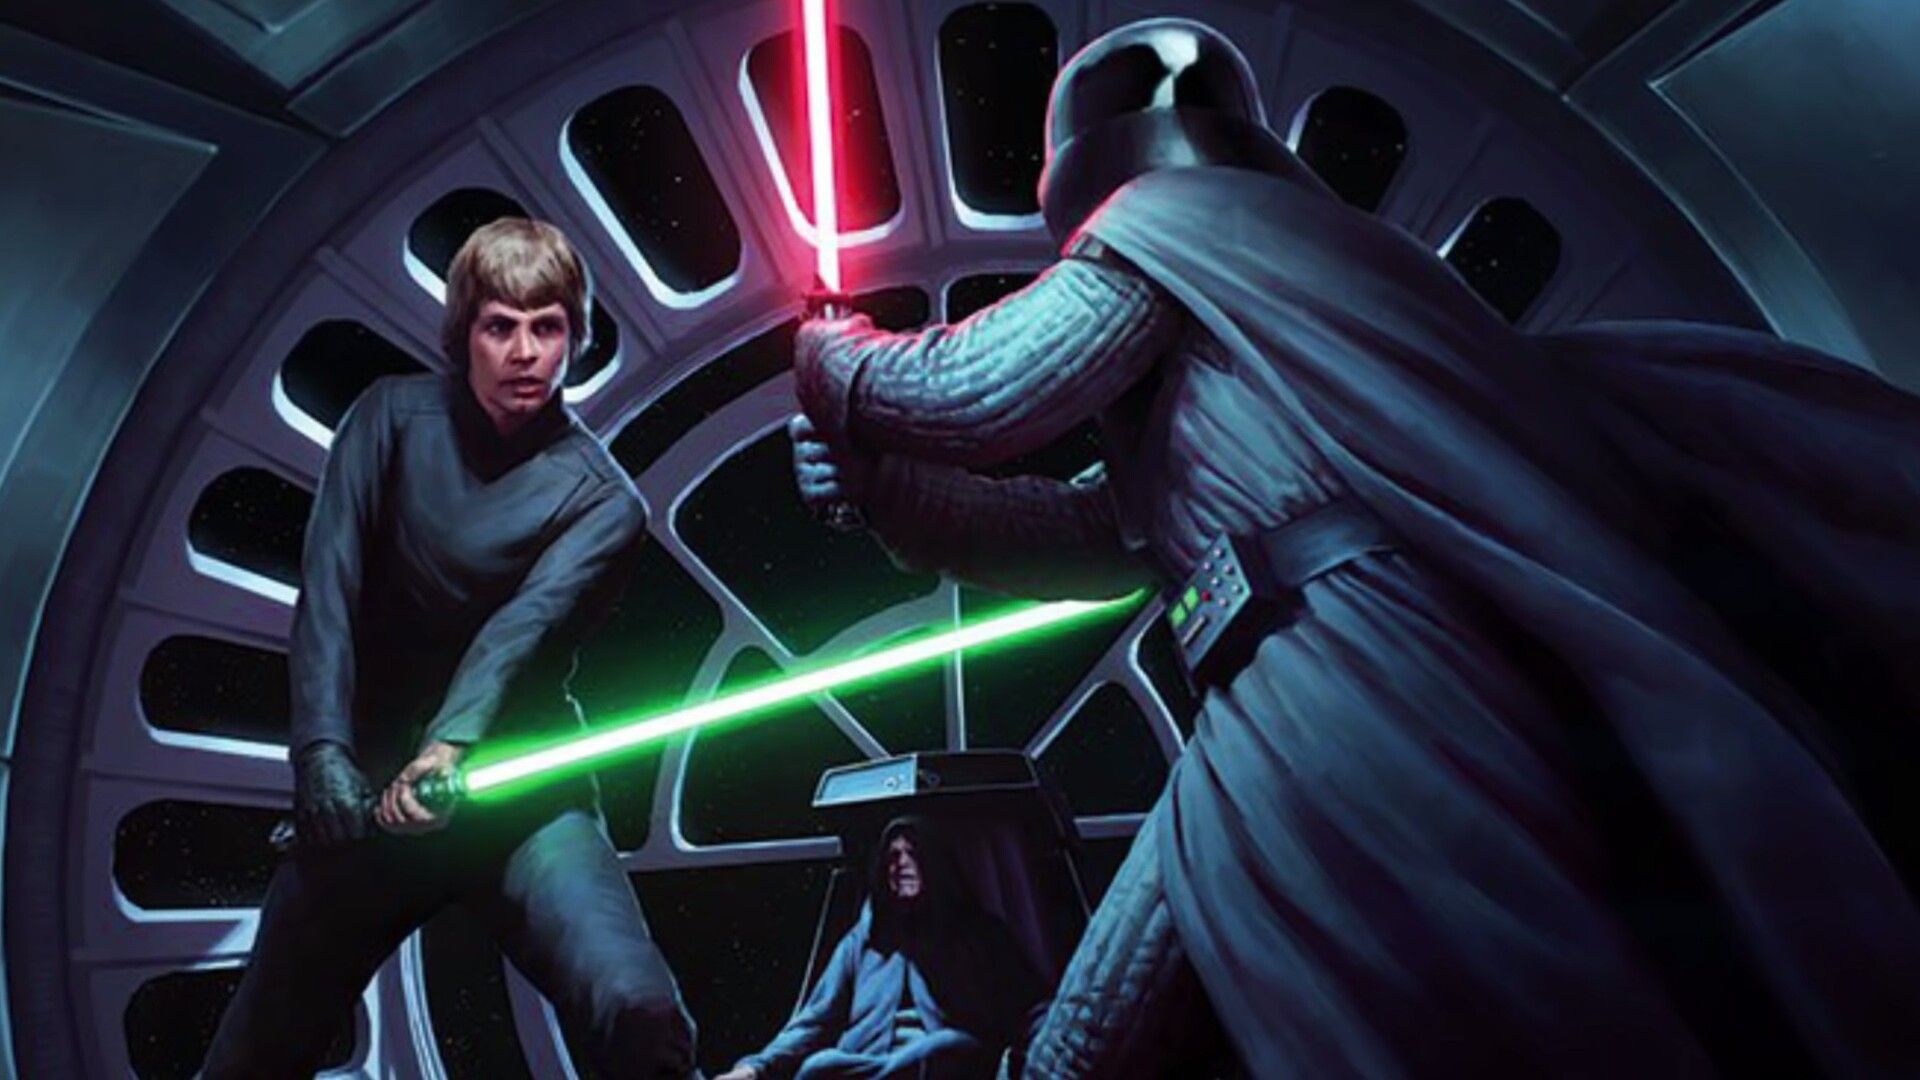 Luke Skywalker Vs Darth Vader. Star wars picture, Star wars image, Star wars